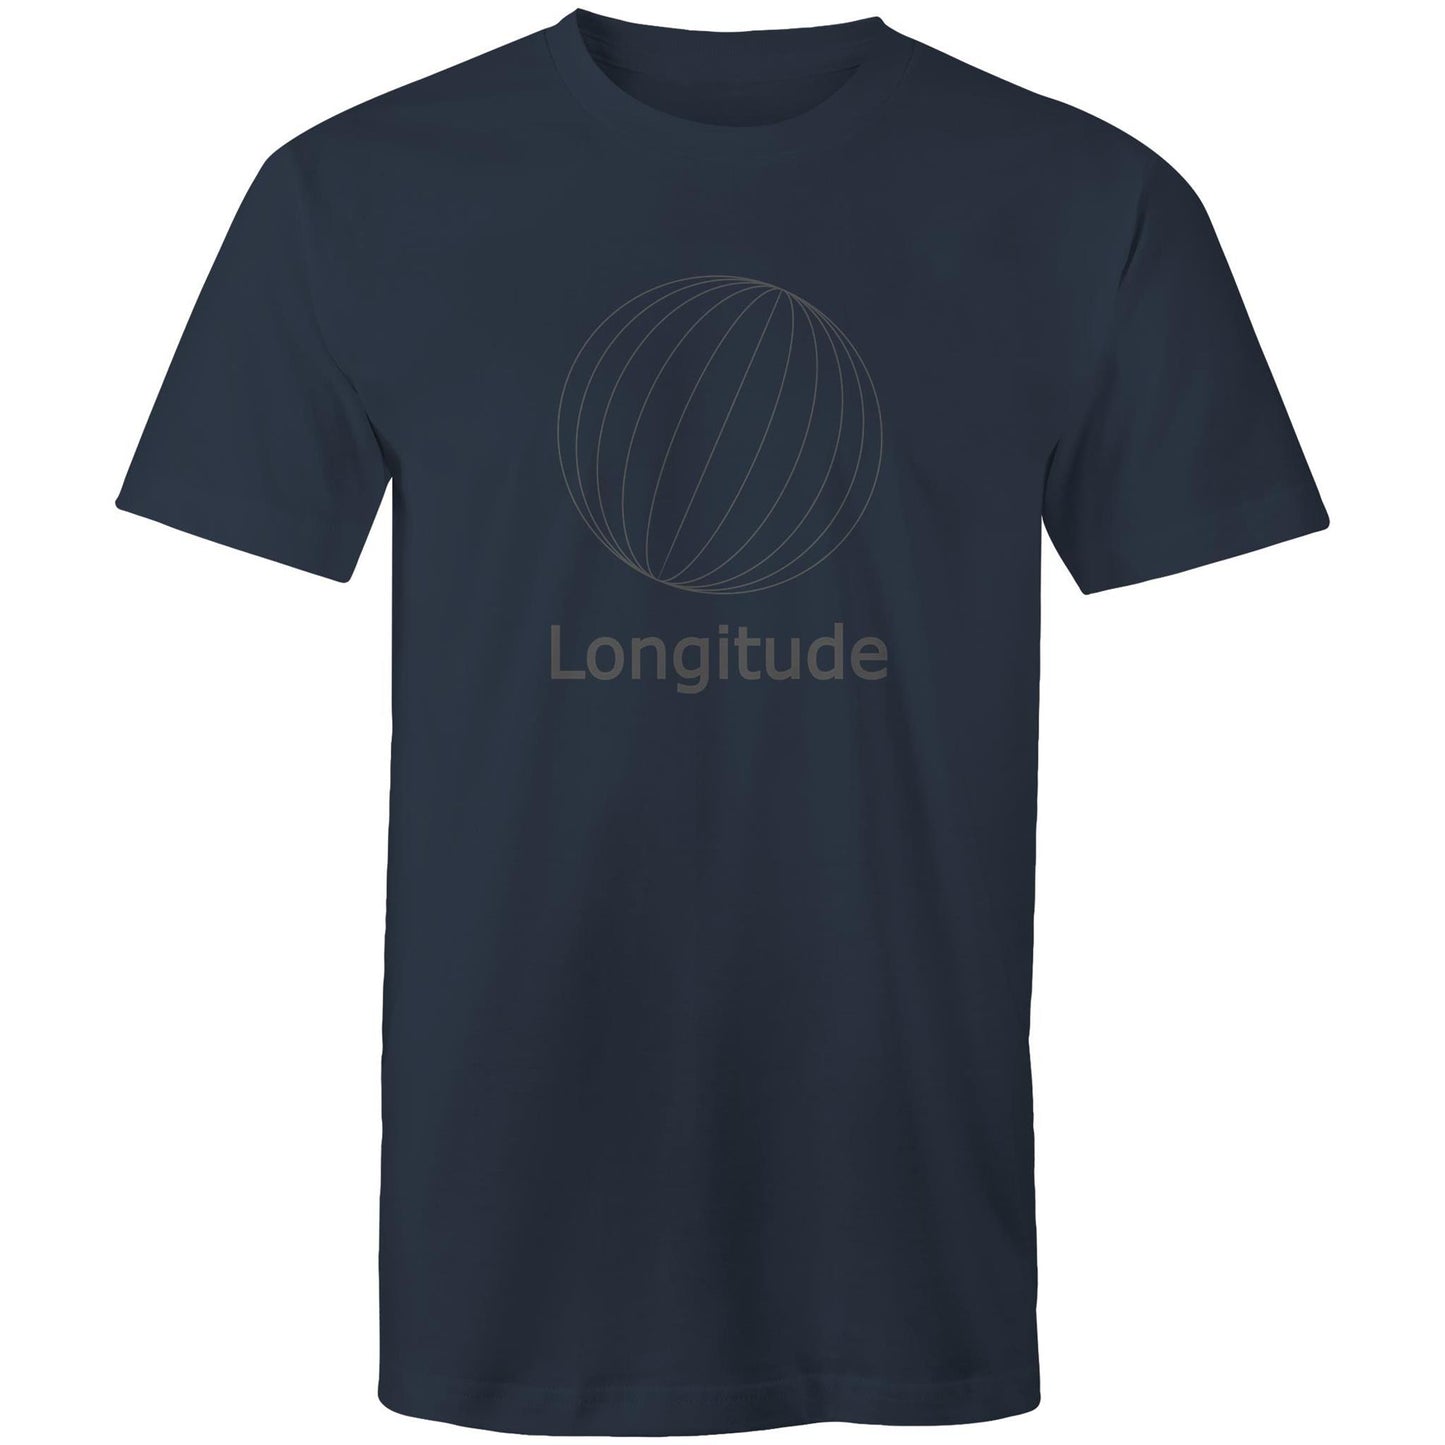 Longitude - Mens T-Shirt